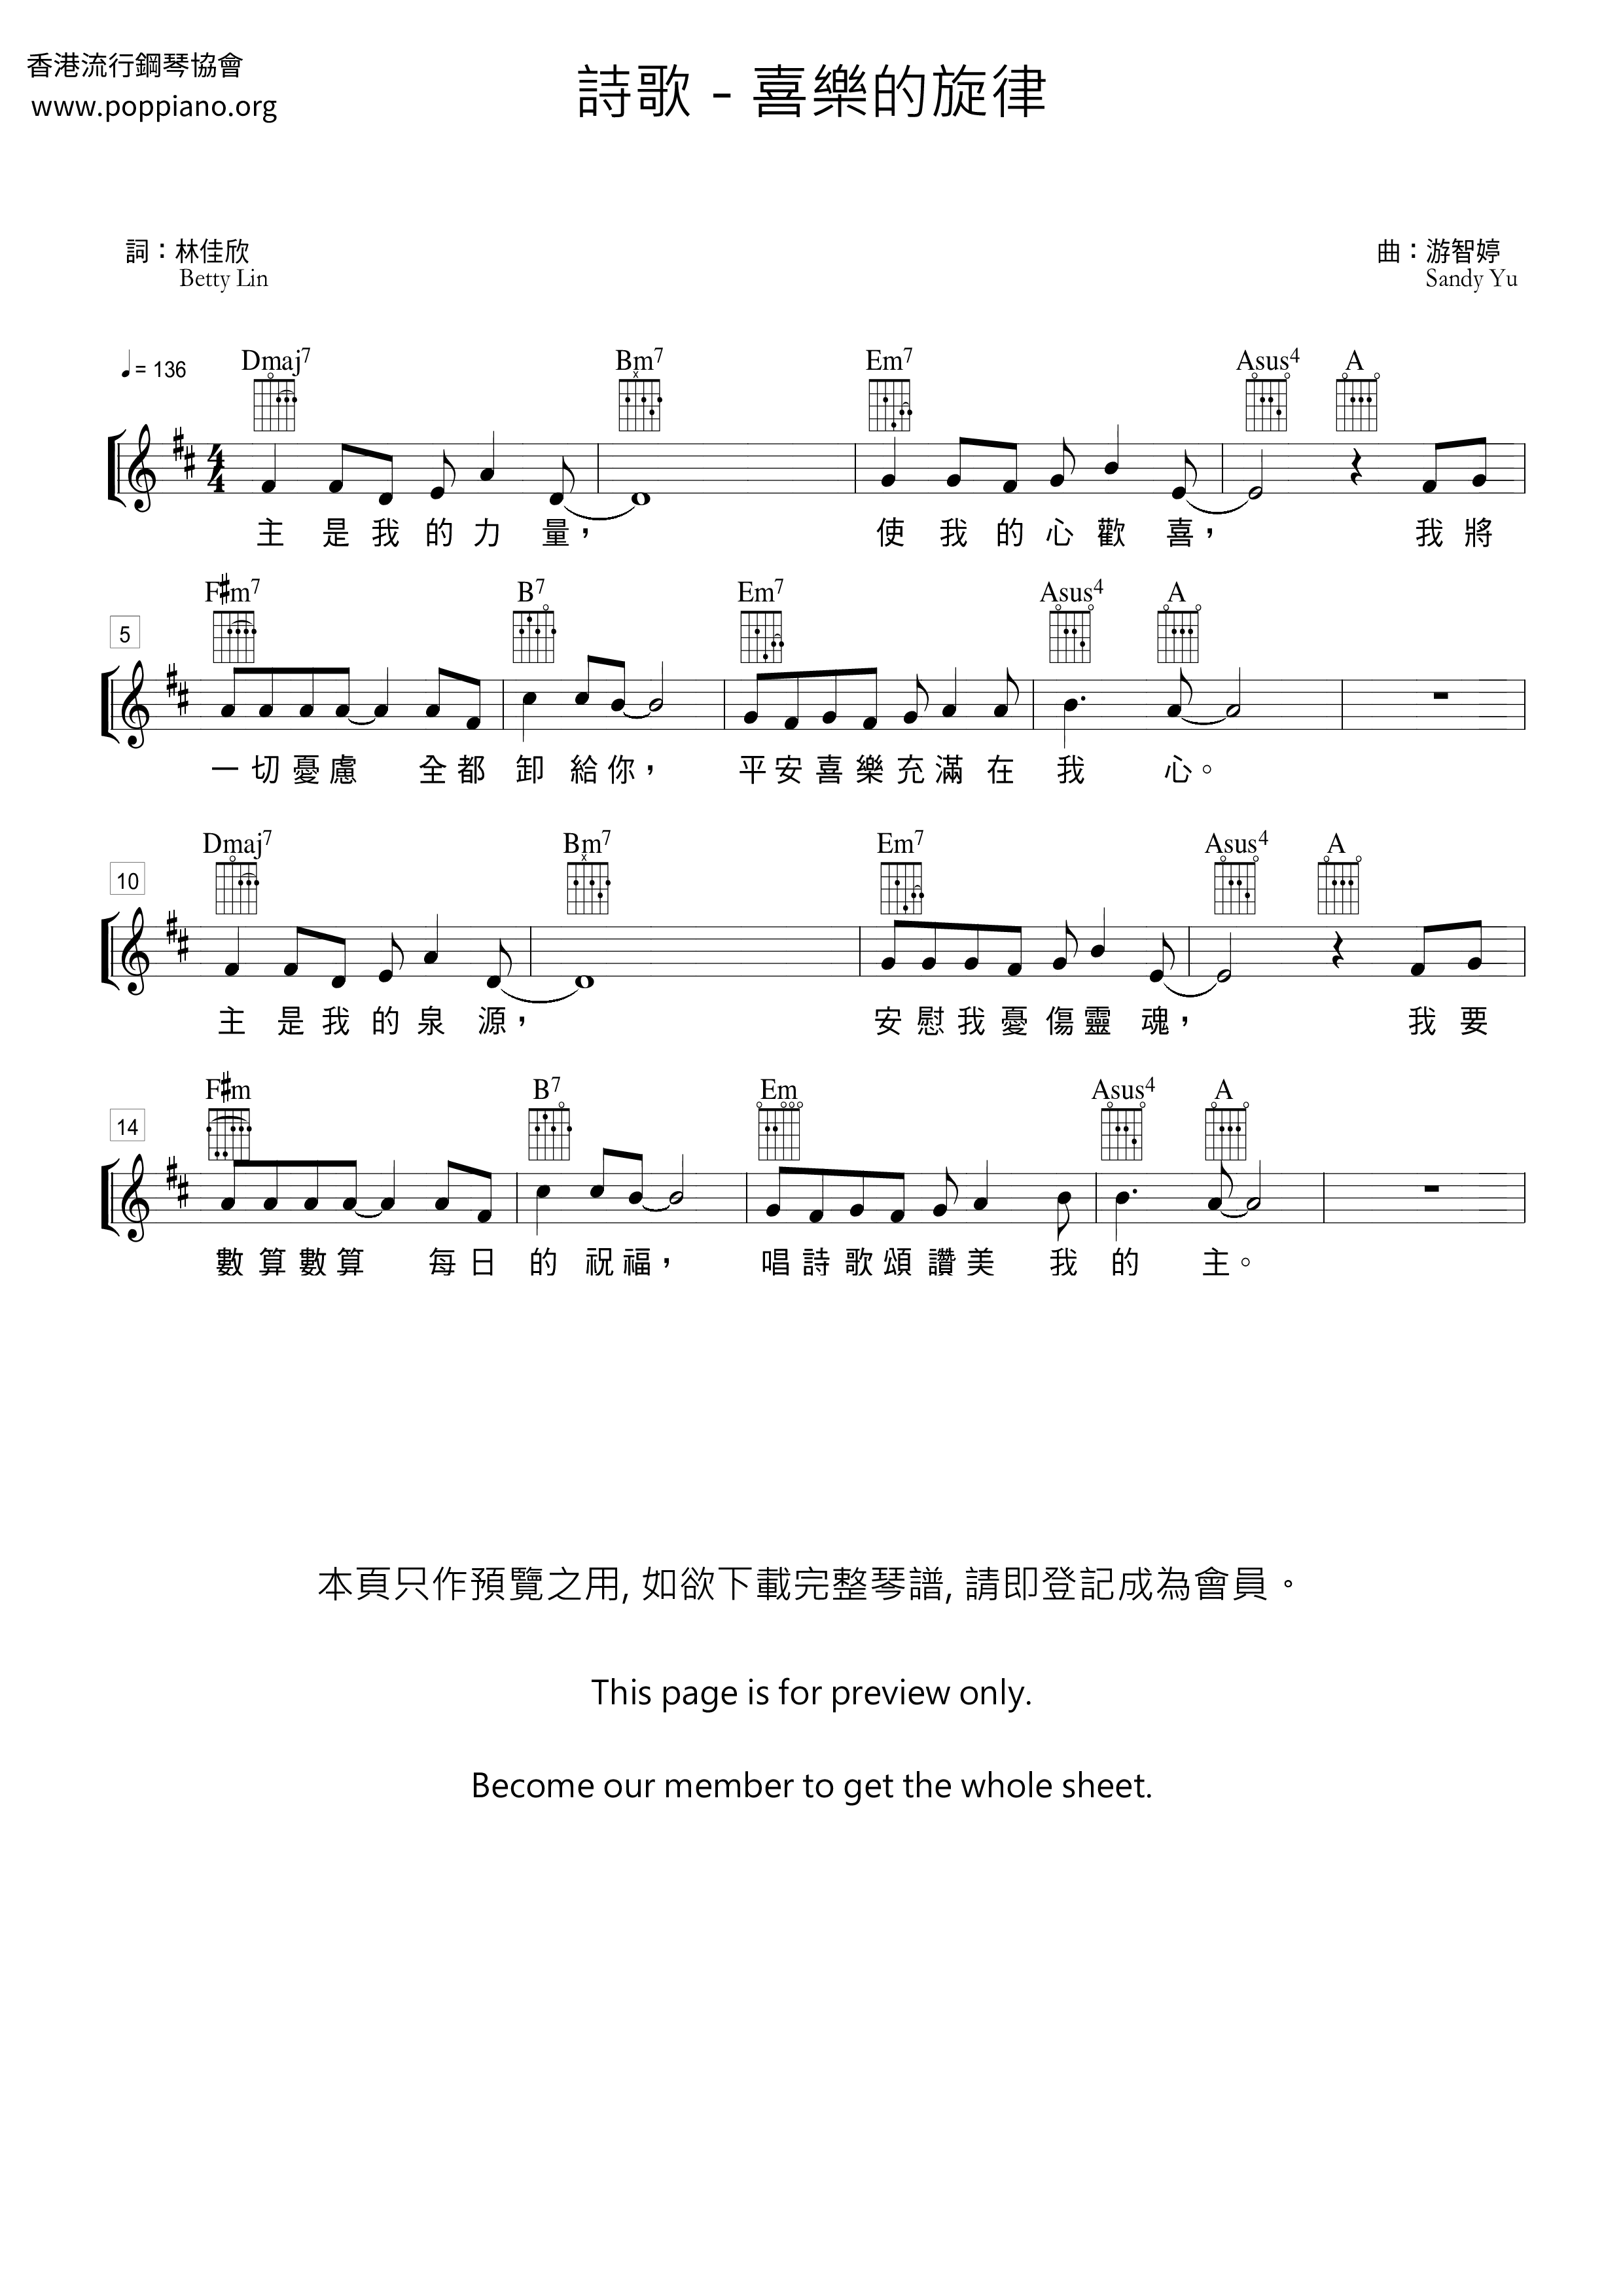 Joyful Melody Score